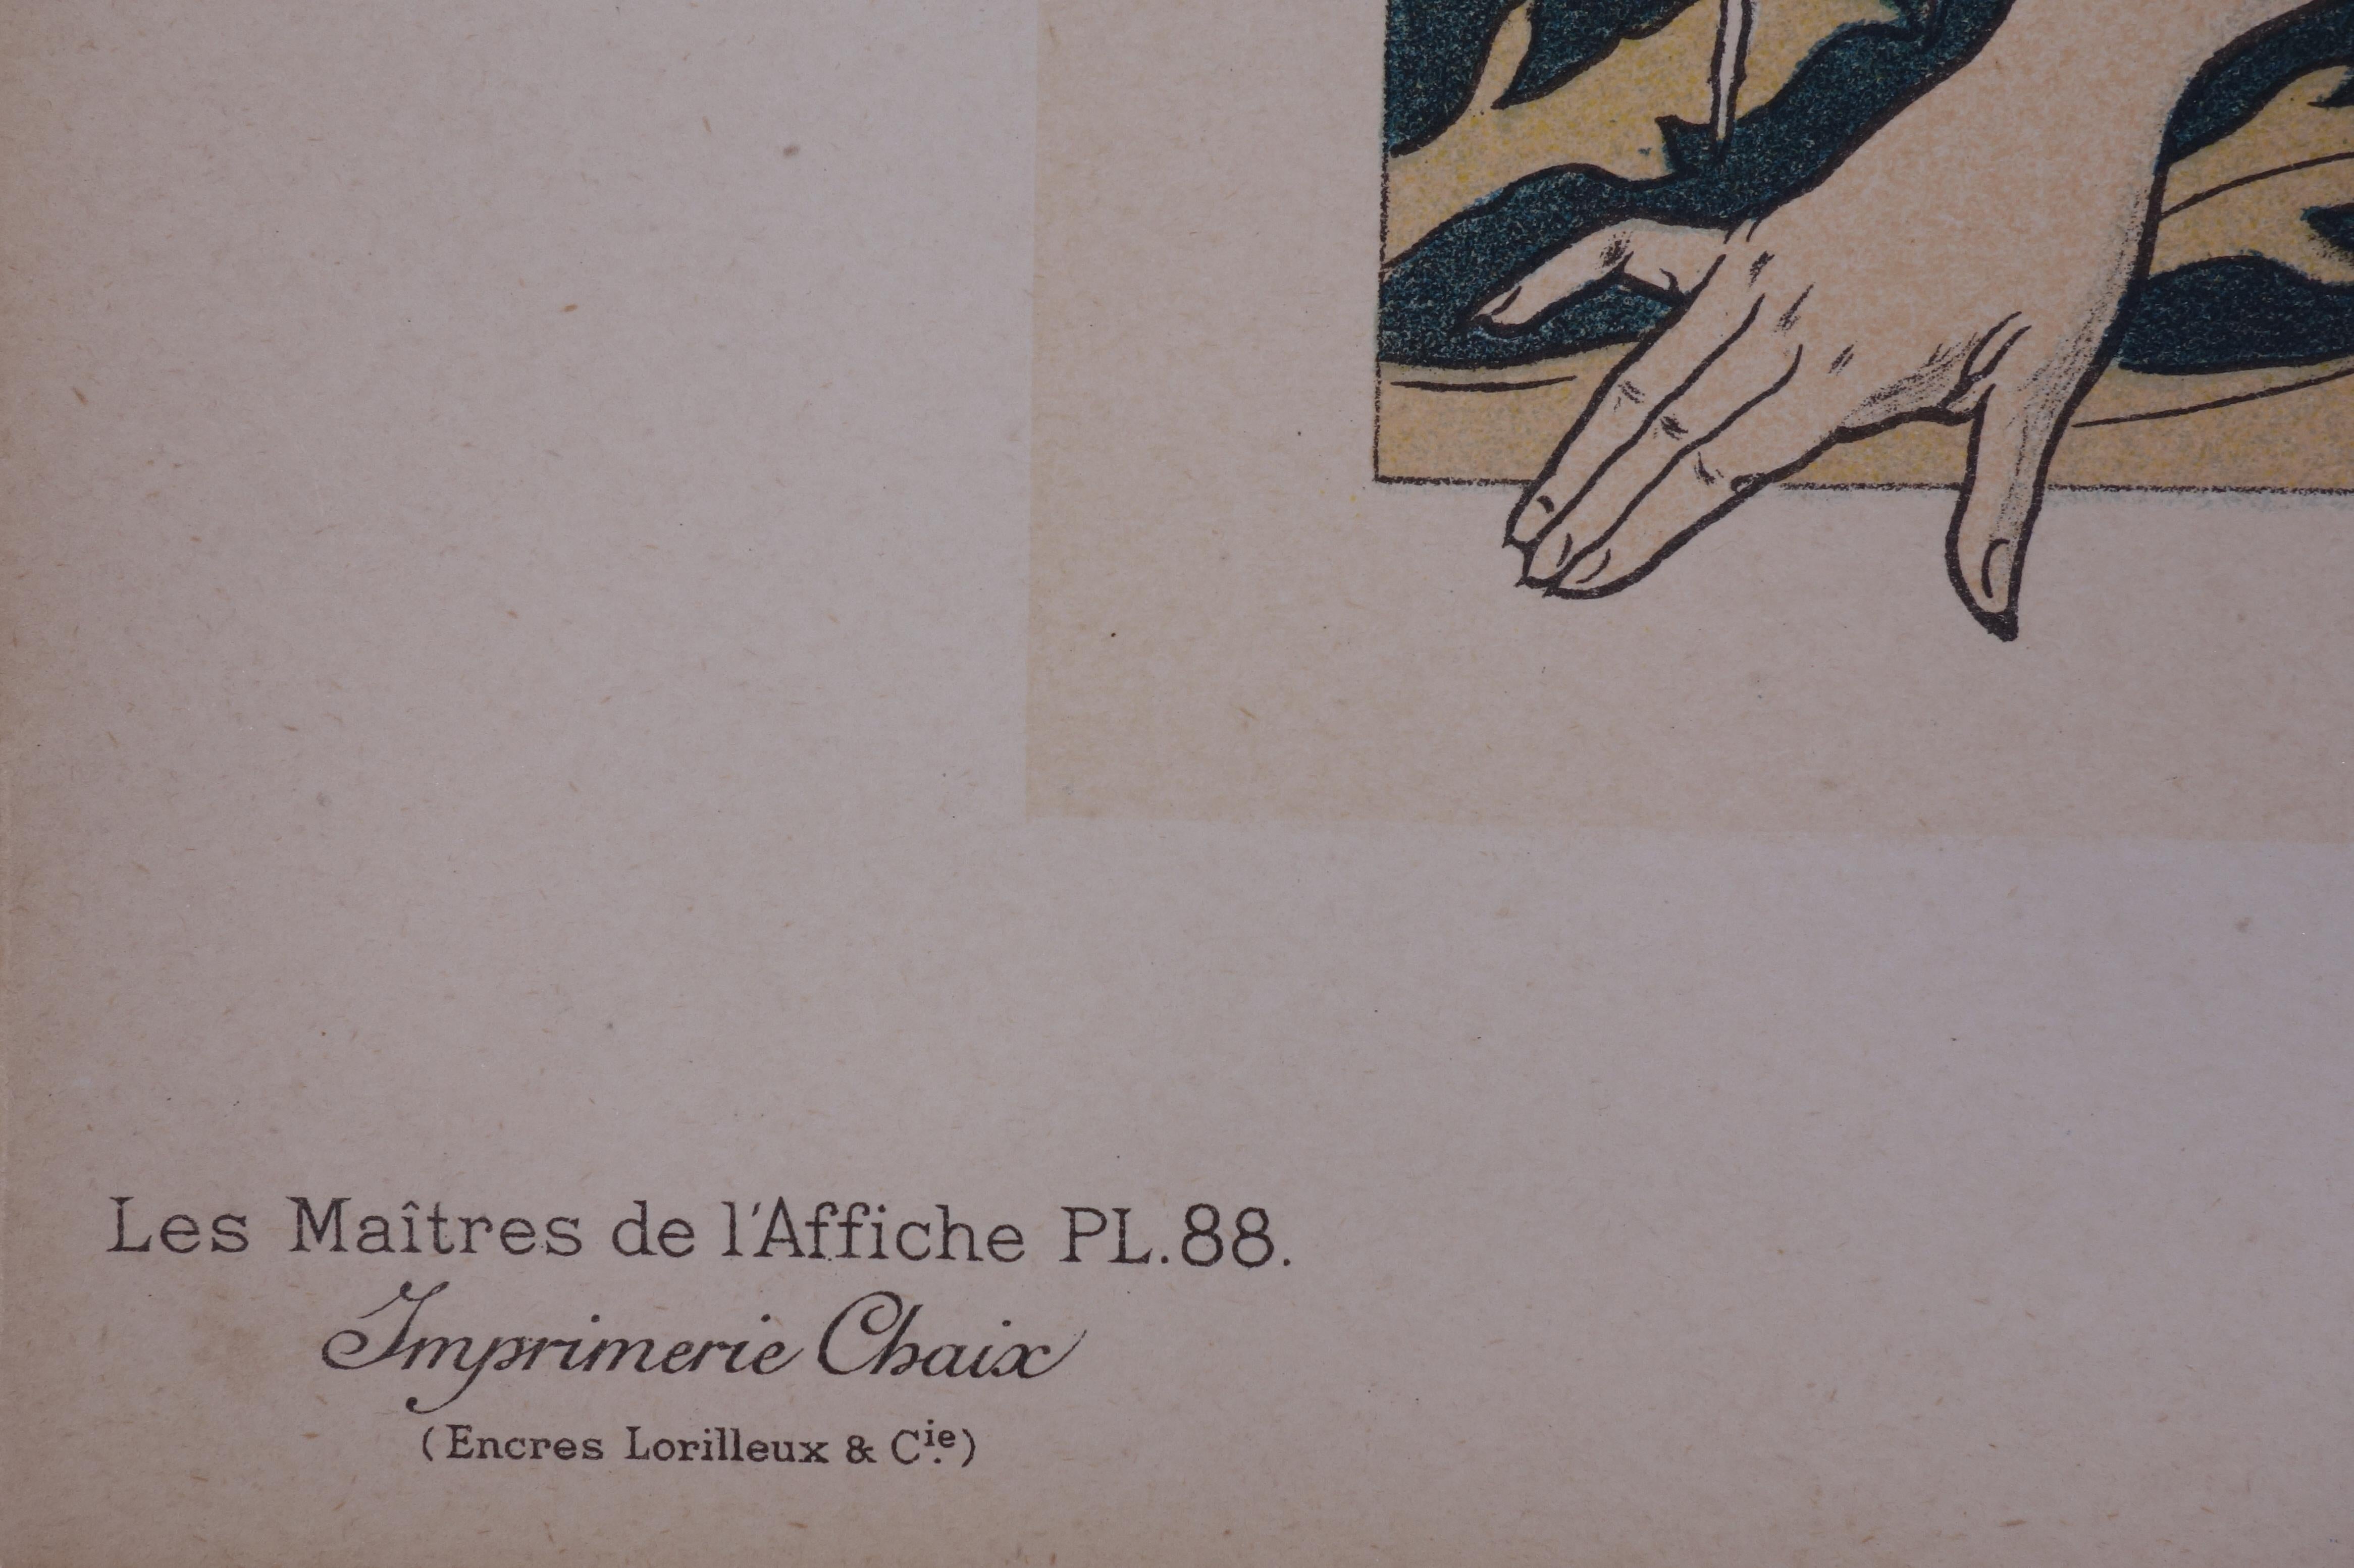 Henri PRIVAT-LIVEMONT (1861-1936)
Normandie, Cabourg, 1897

Steinlithographie
Gedruckte Unterschrift auf der Platte
Auf Pergament 
Größe 29 x 39 cm (ca. 11,4 x 15,3 Zoll)
Trägt den Blindstempel des Herausgebers in der rechten unteren